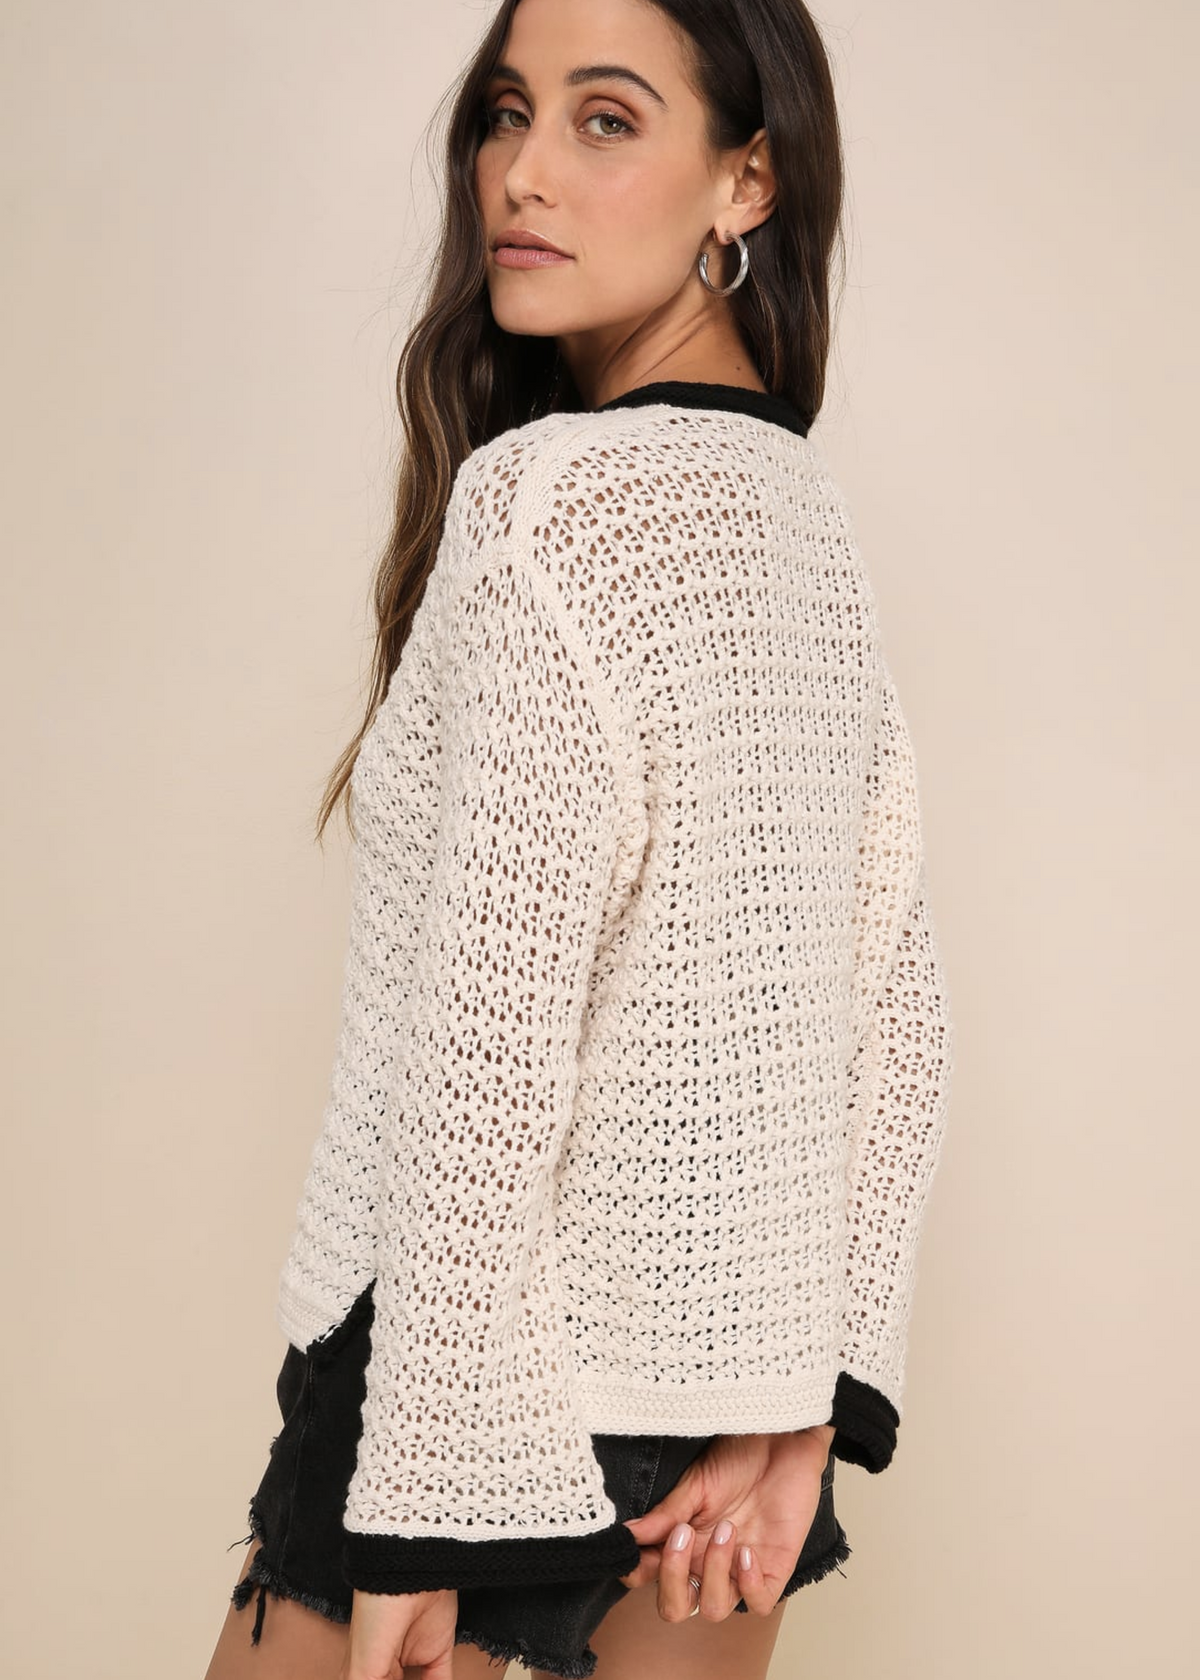 Sofia Crochet Top White Black